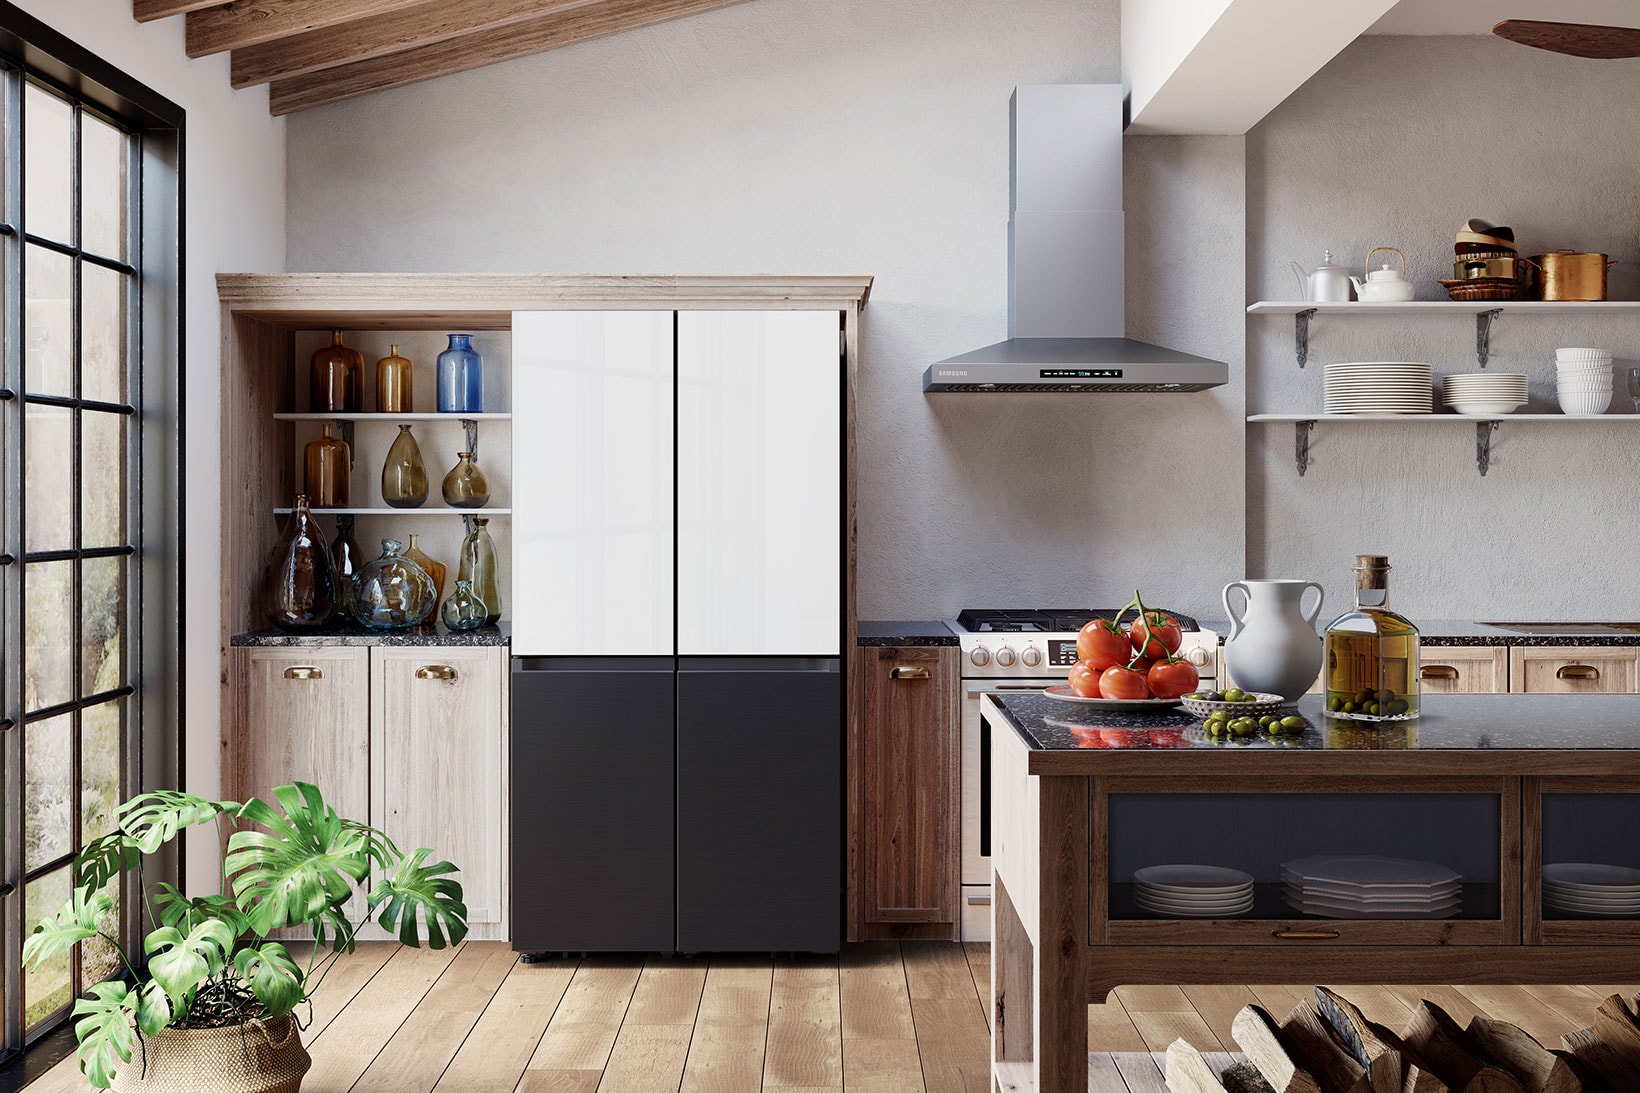 samsung bespoke refrigerator black white home kitchen gadgets appliances